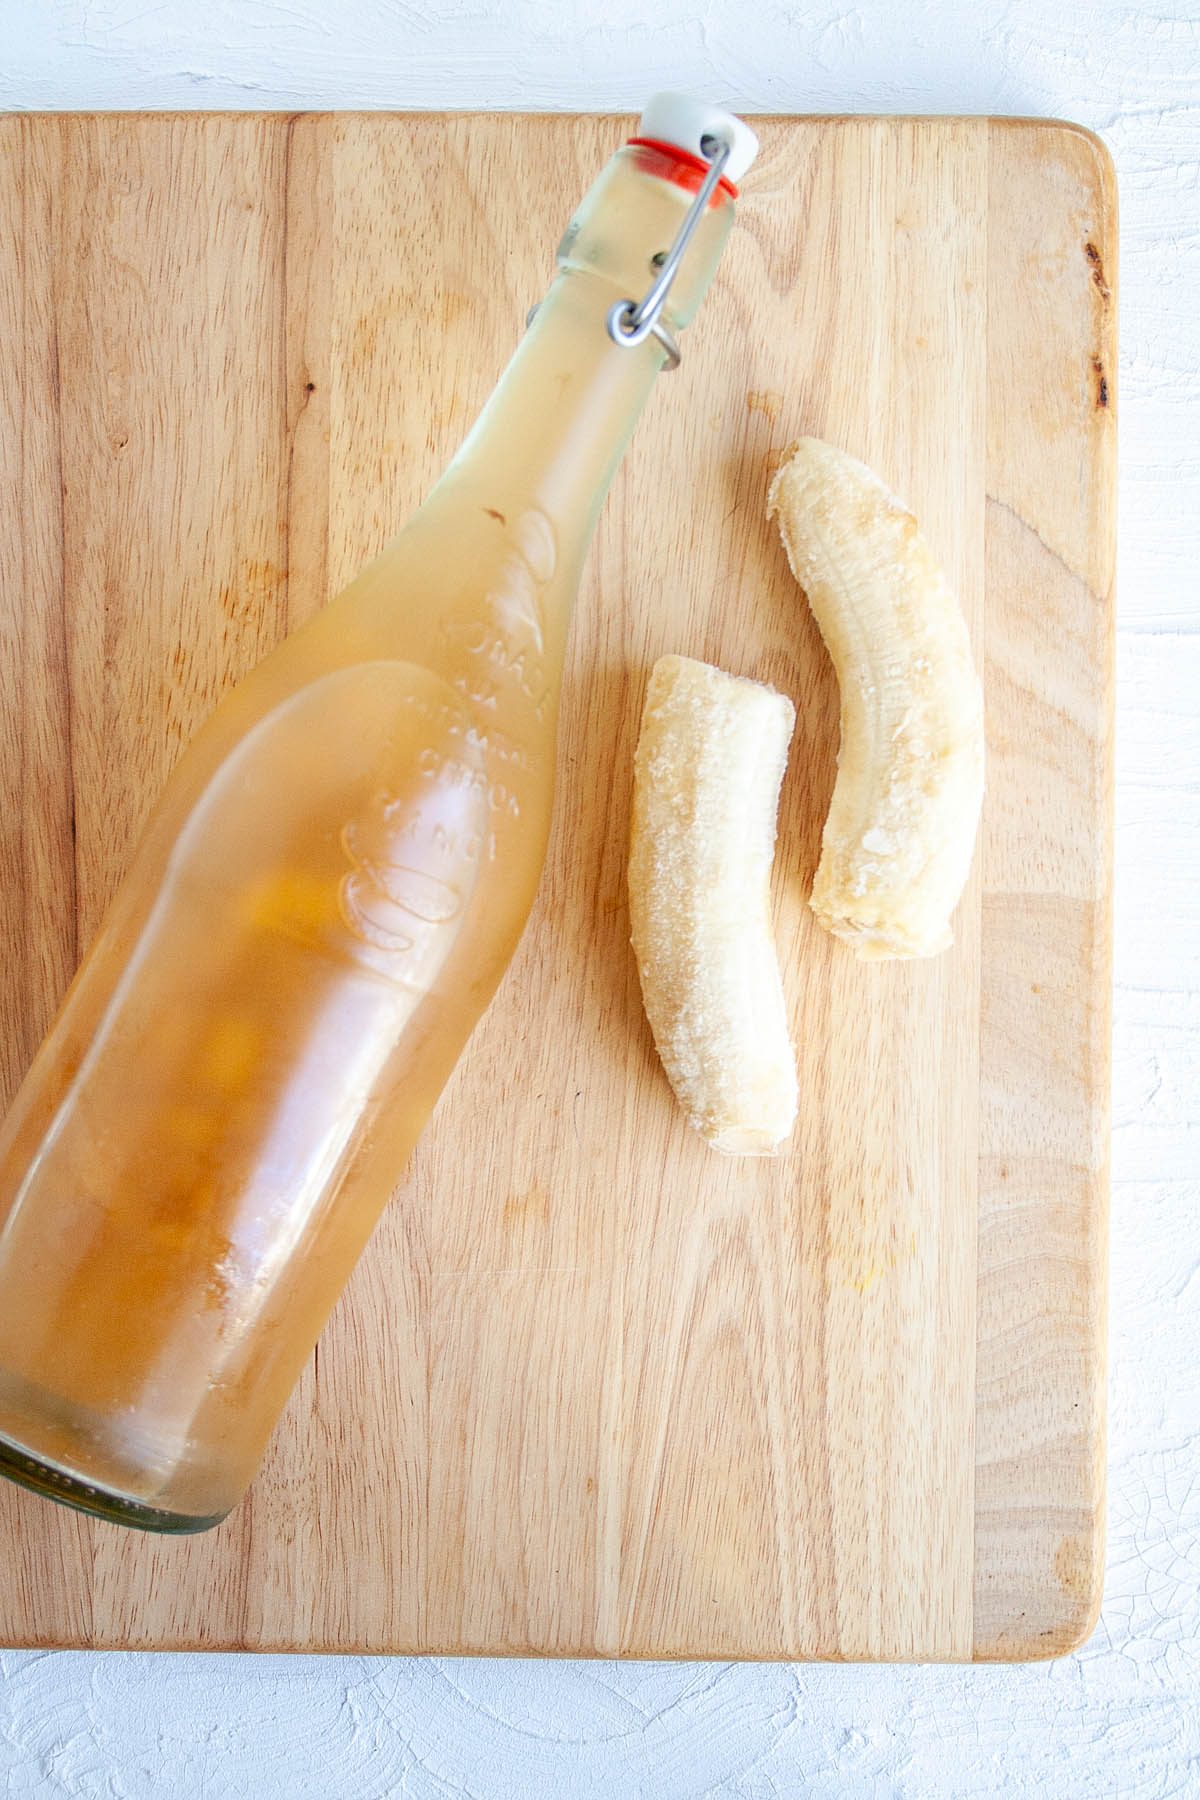 Banana Kombucha in bottle with banana on cutting board.